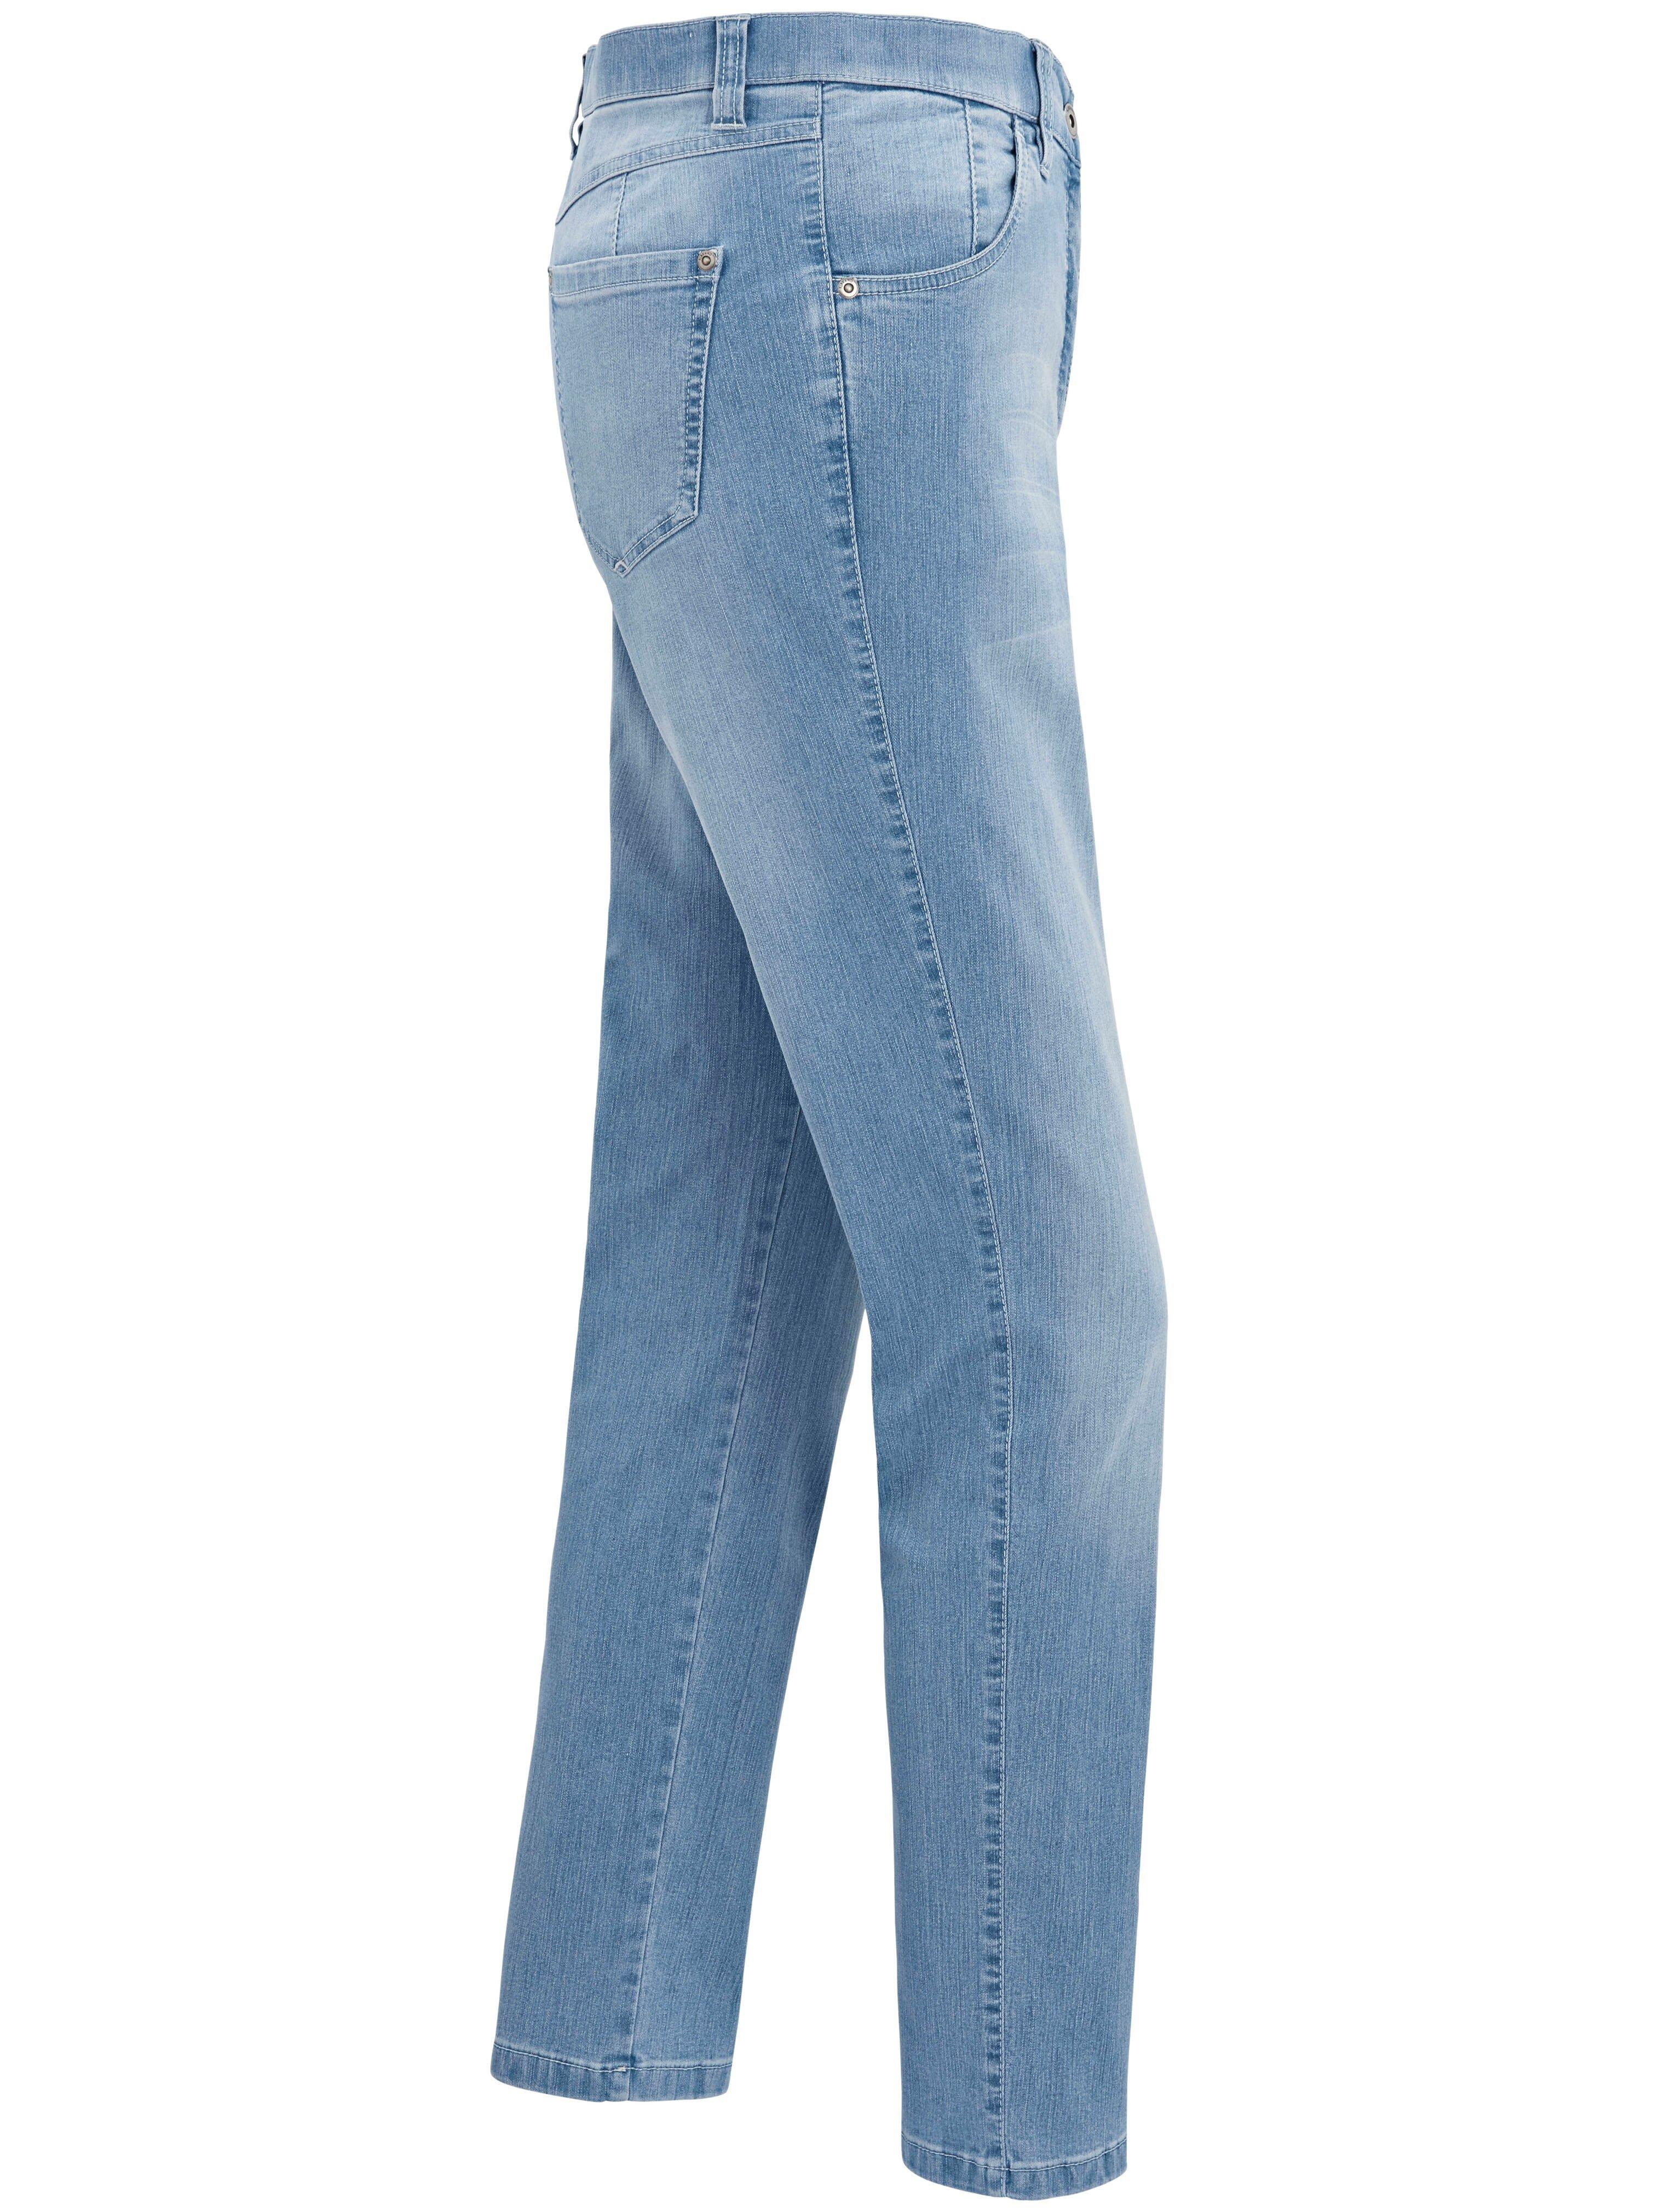 KjBrand - Jeans Modell BETTY - CS denim Bleached